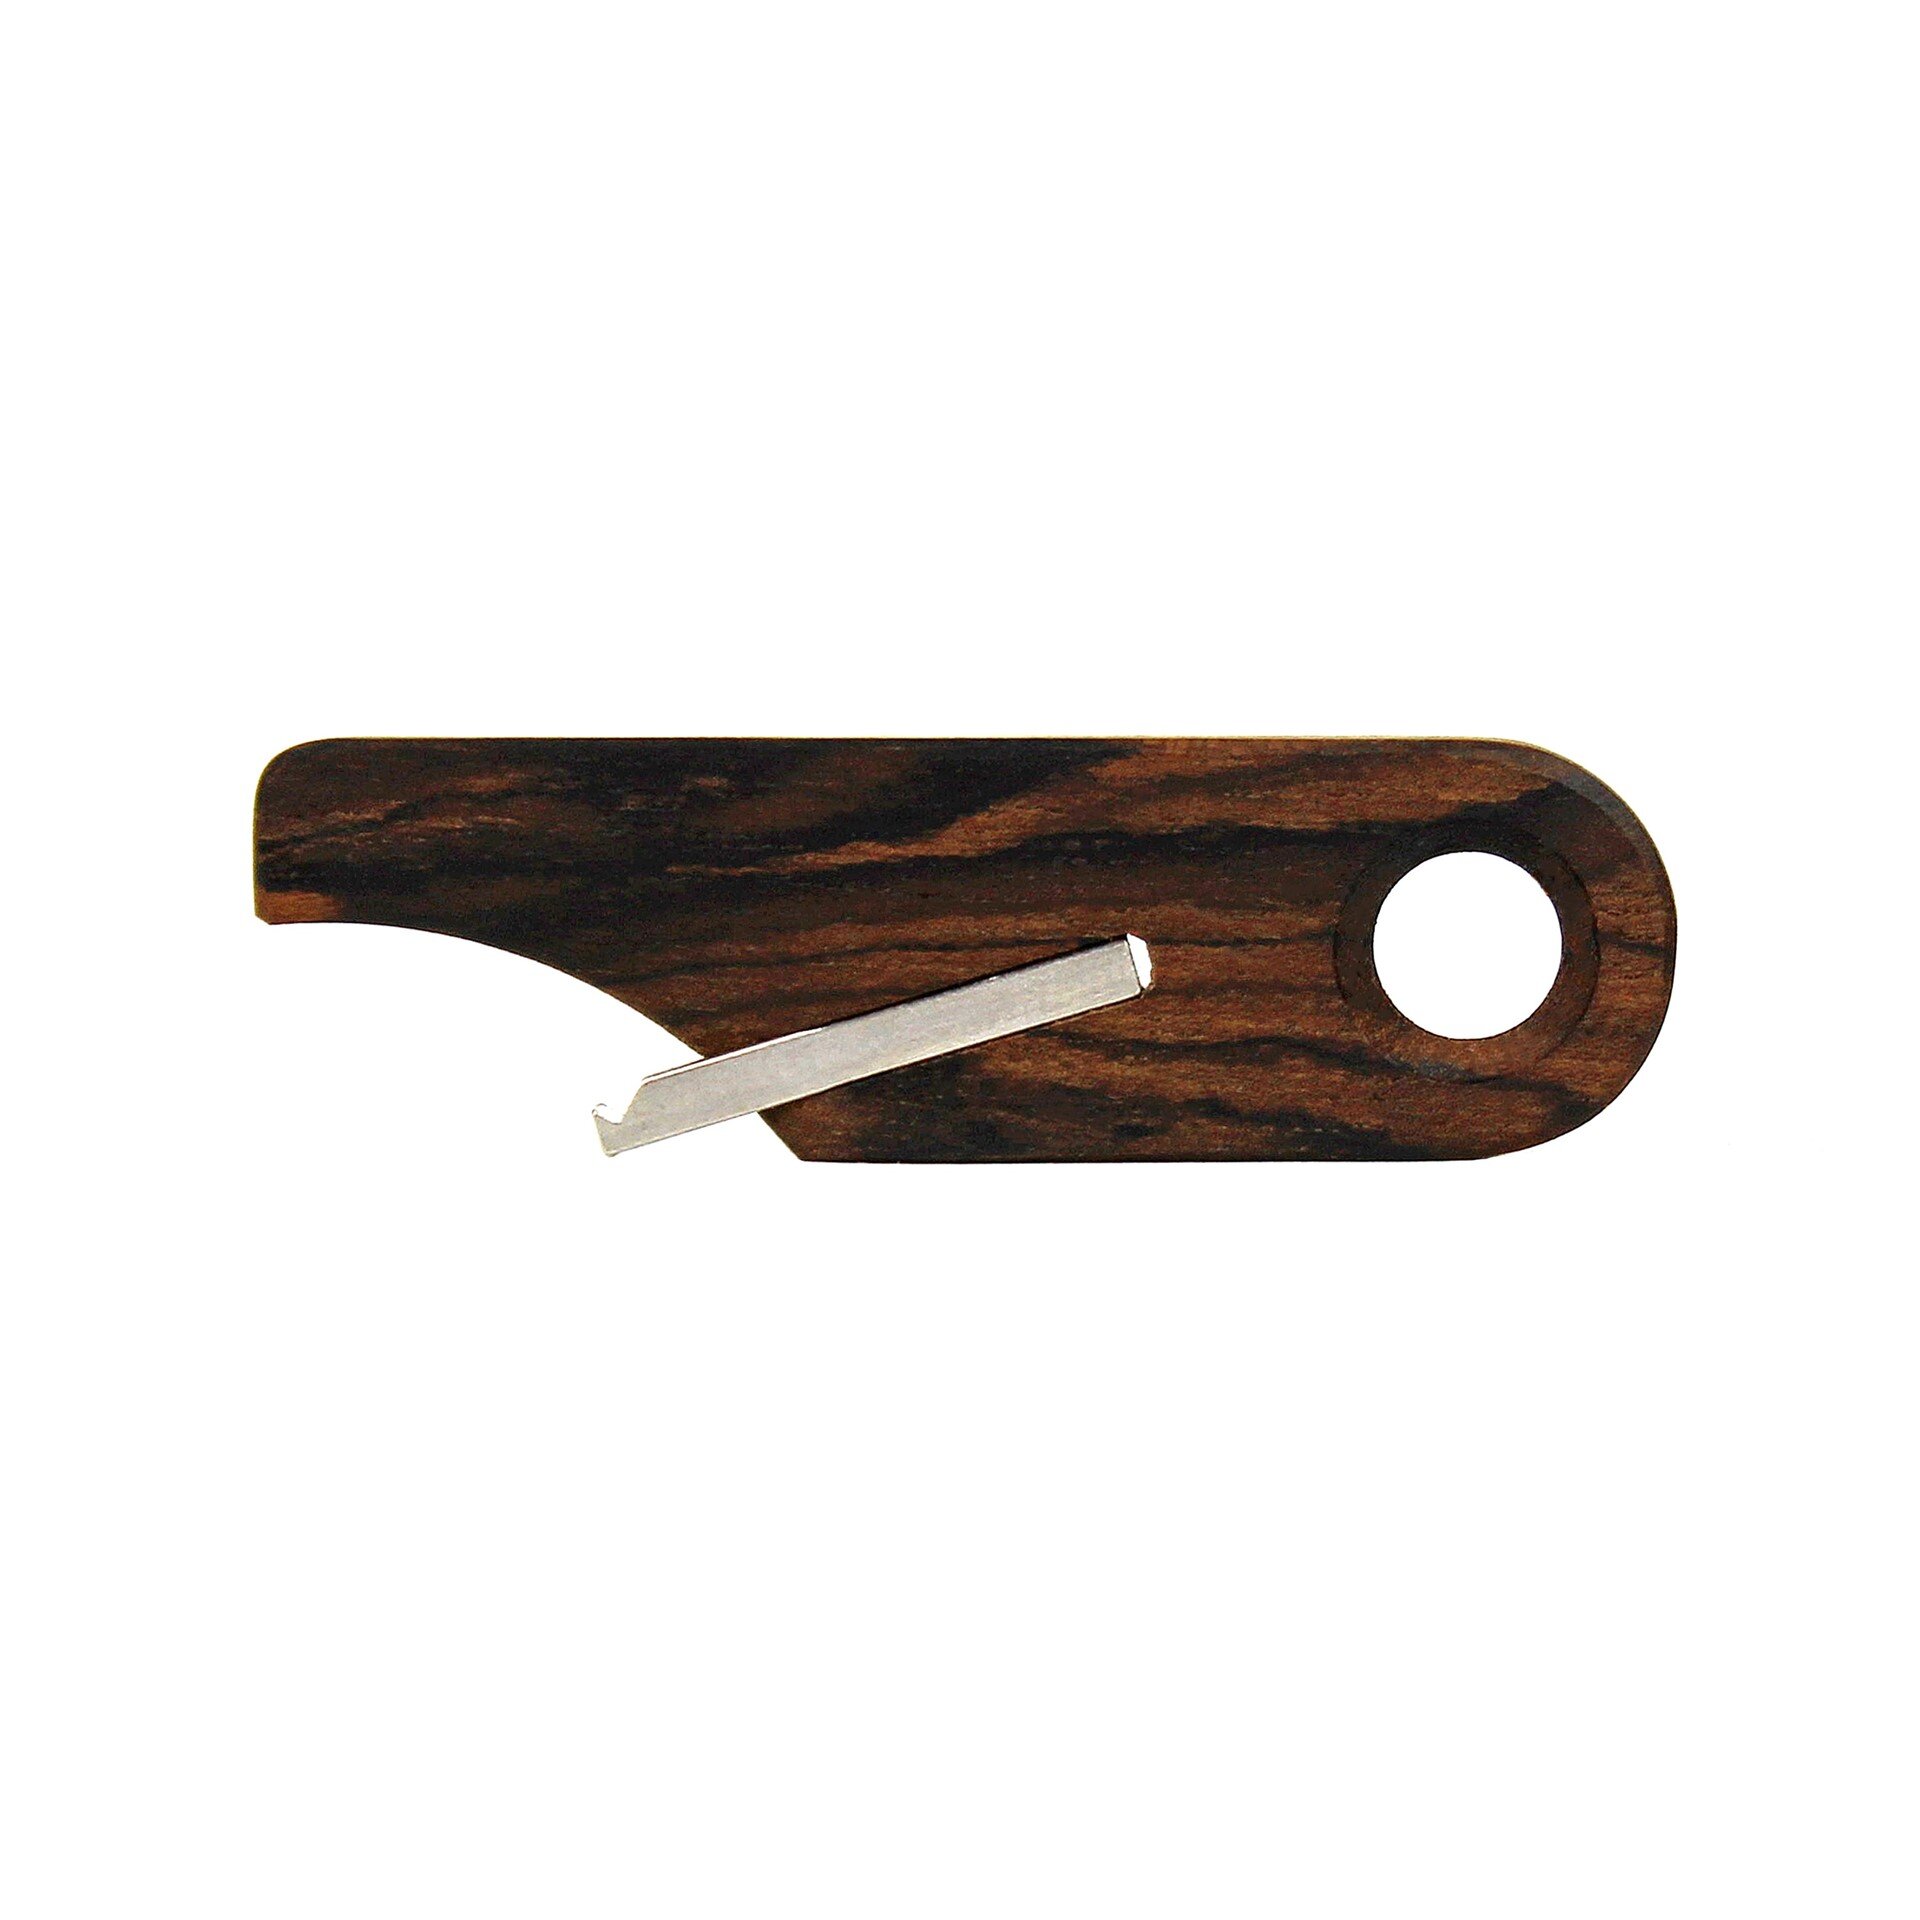 Wooden Bottle Opener Keychain by Rift Wood Company - Ziricote.JPG